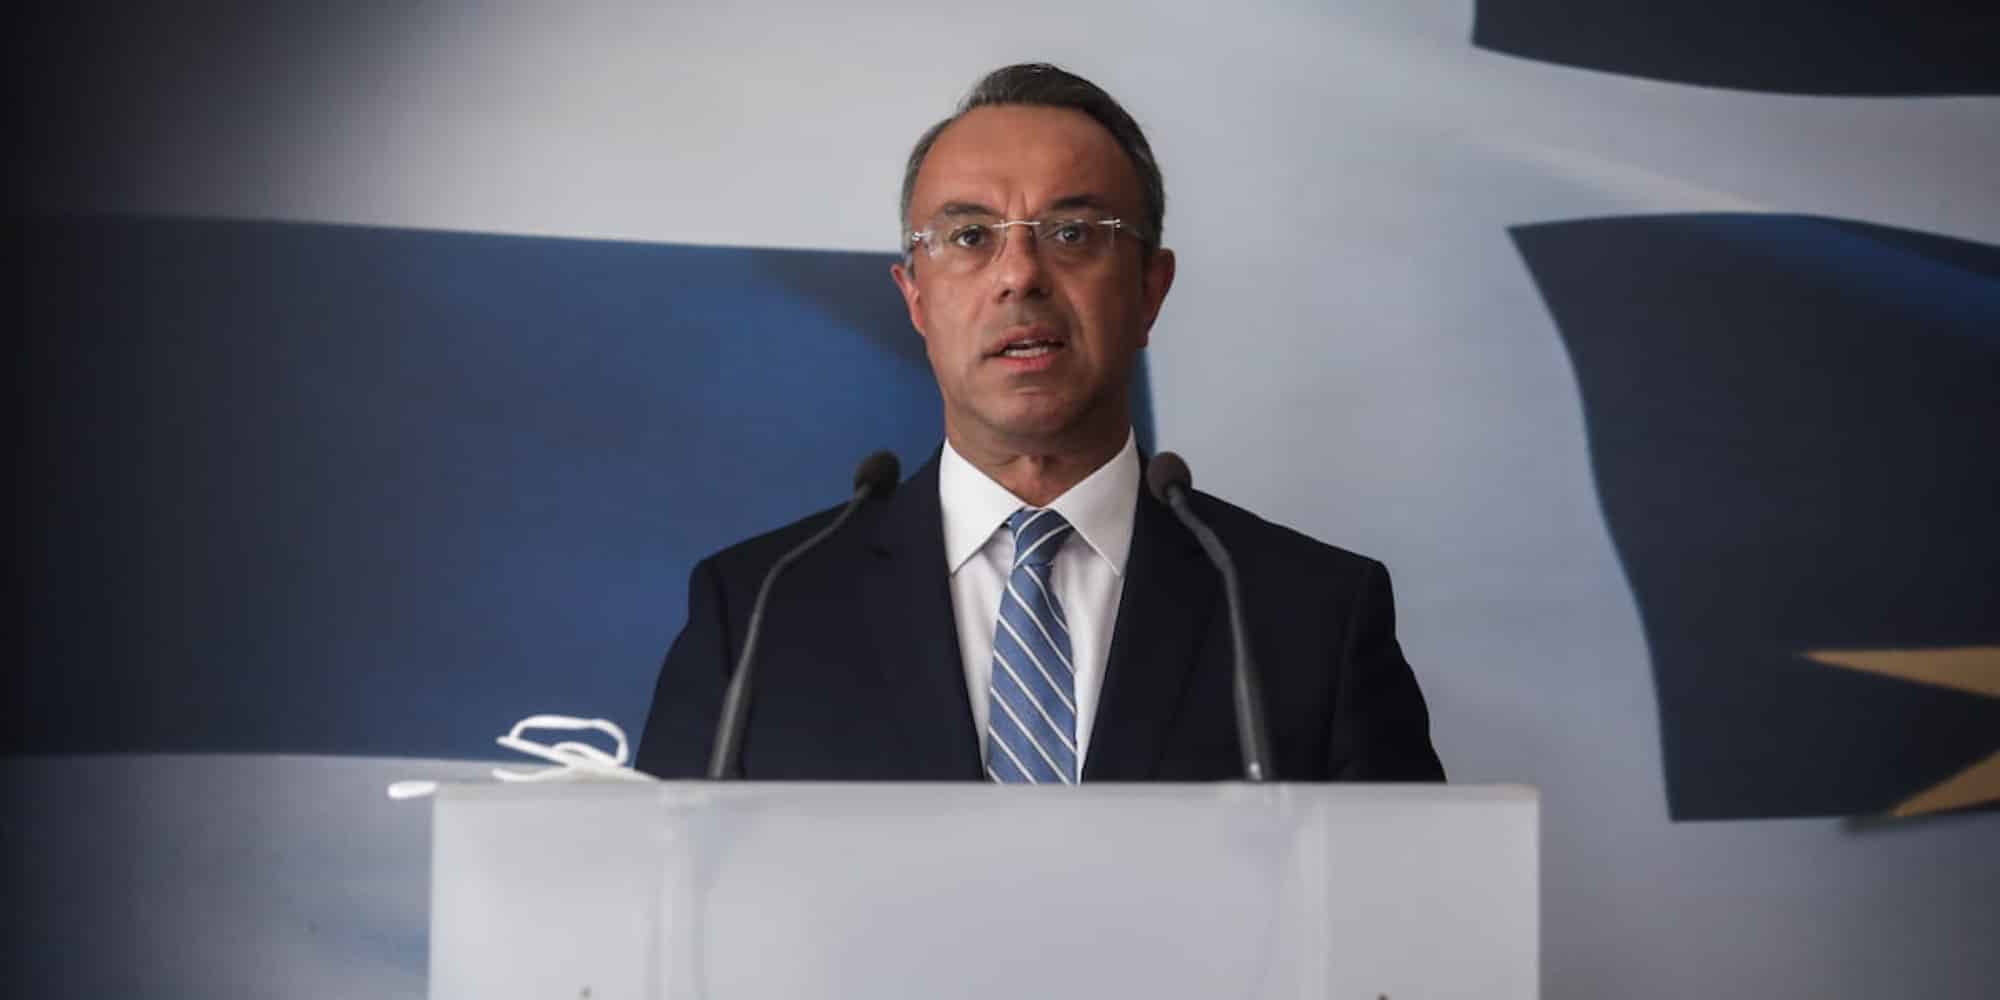 Ο υπουργός Οικονομικών και Διοικητής της ΕΤΕπ Χρήστος Σταϊκούρας